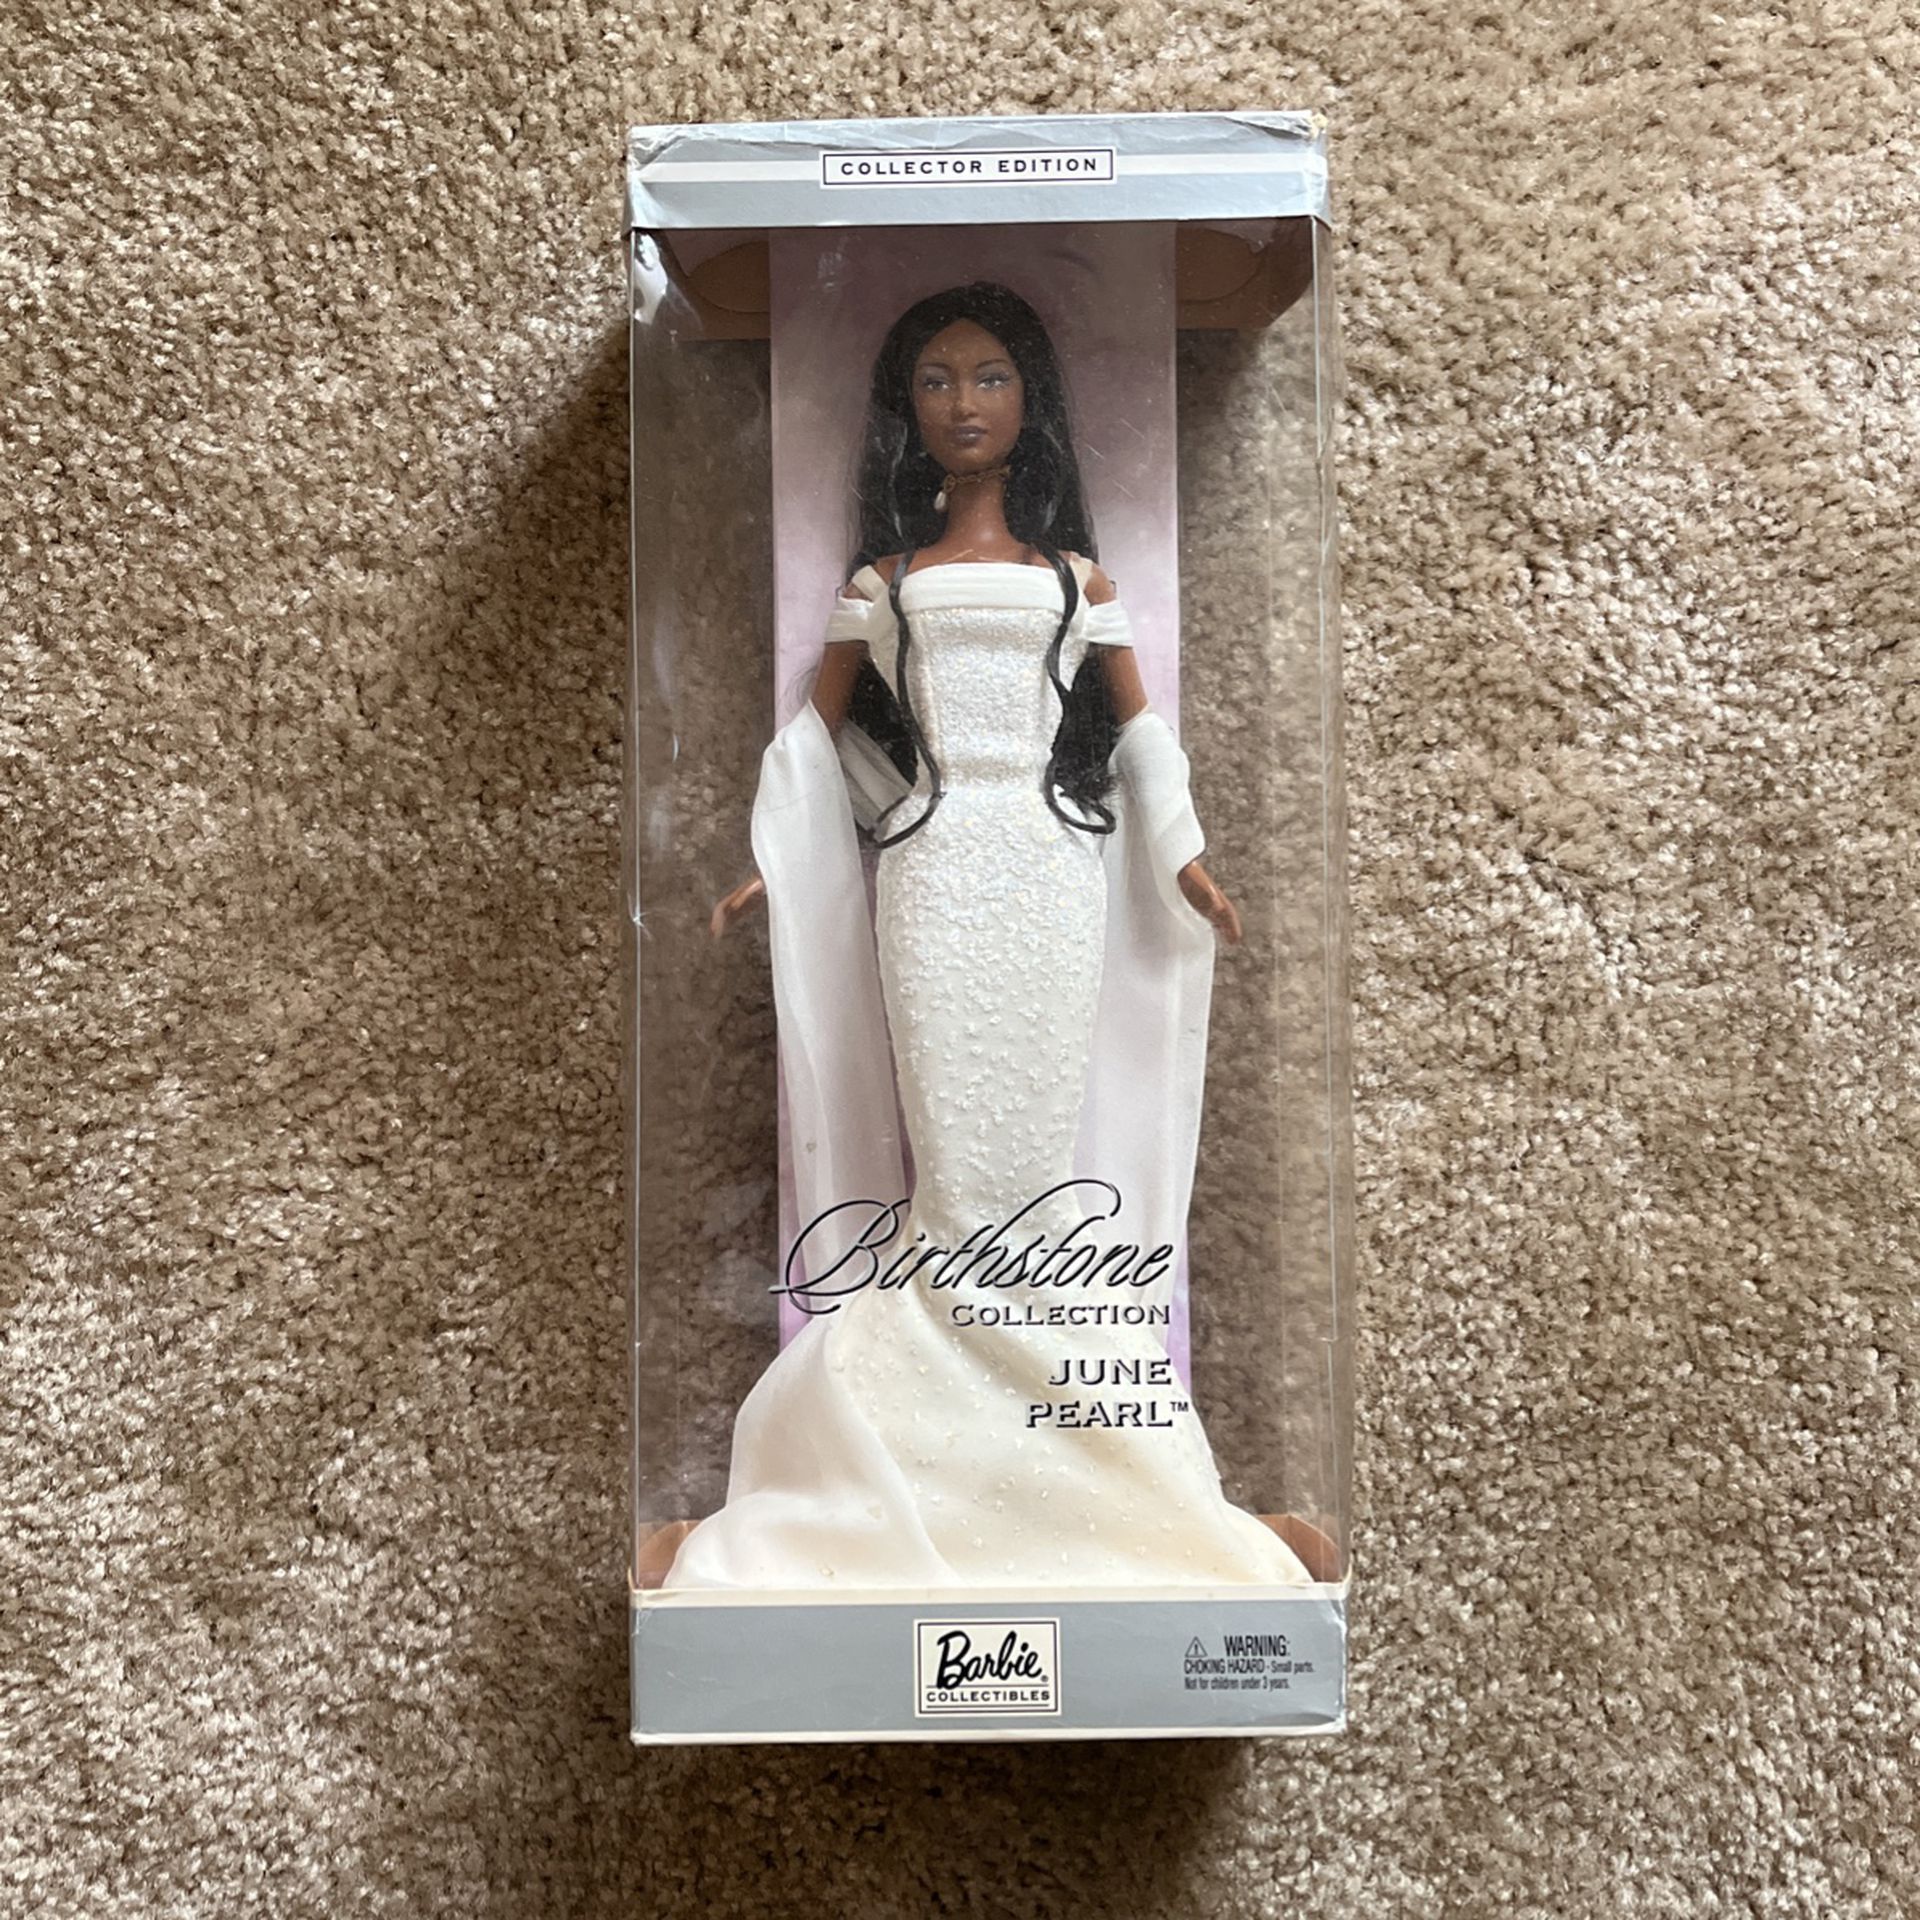 Collectors Edition Barbie